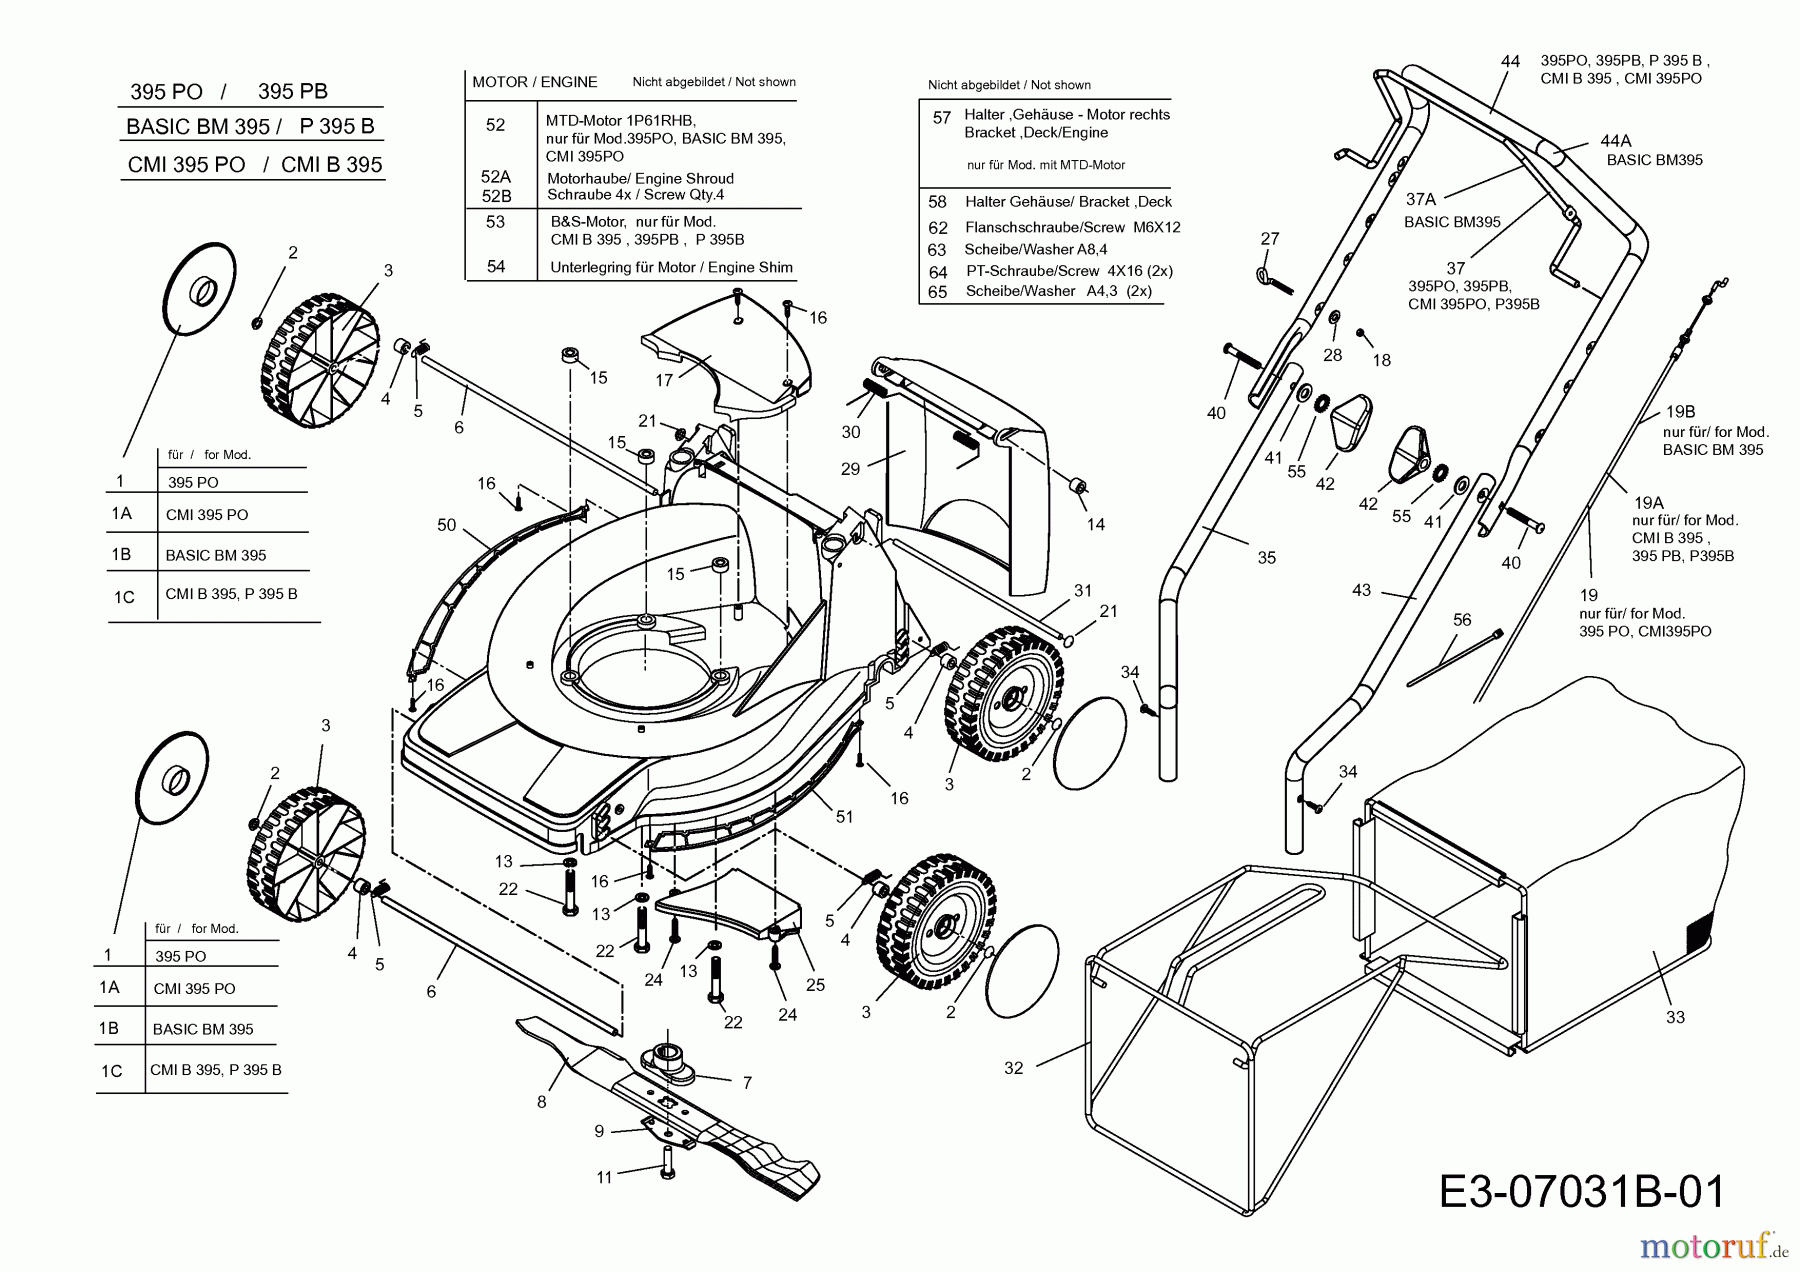  Basic Motormäher Basic BM 395 11BBB1JD601  (2012) Grundgerät